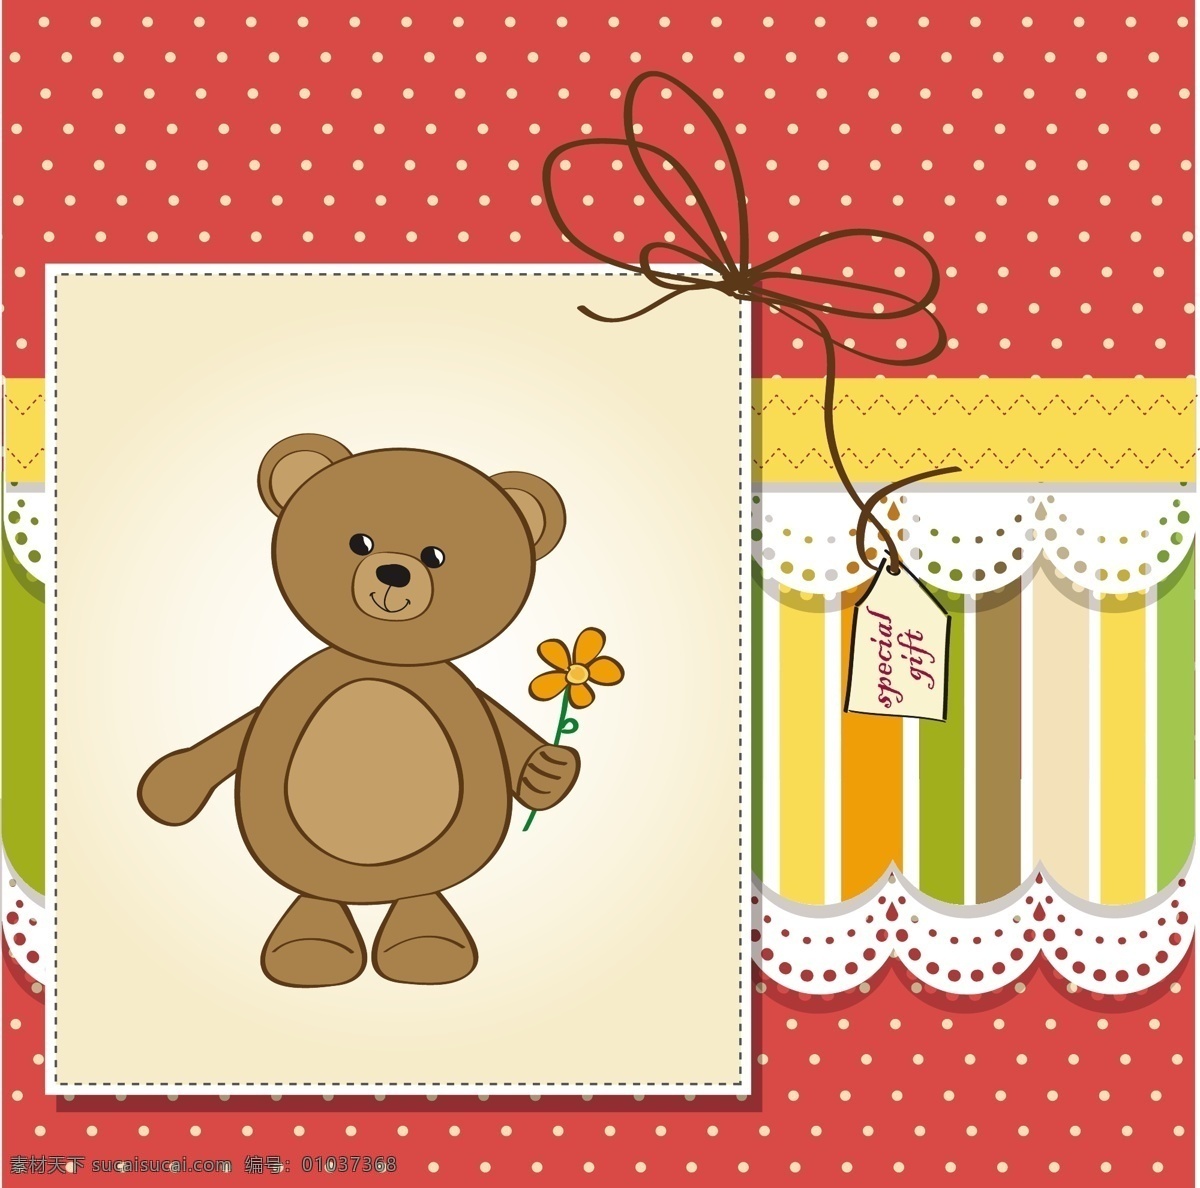 可爱 泰迪 熊 贺卡 鲜花 卡片 礼物 花边 可爱的熊 礼品卡 丰富多彩 剪贴簿 泰迪熊 问候 环 星罗棋布 水平缝 白色